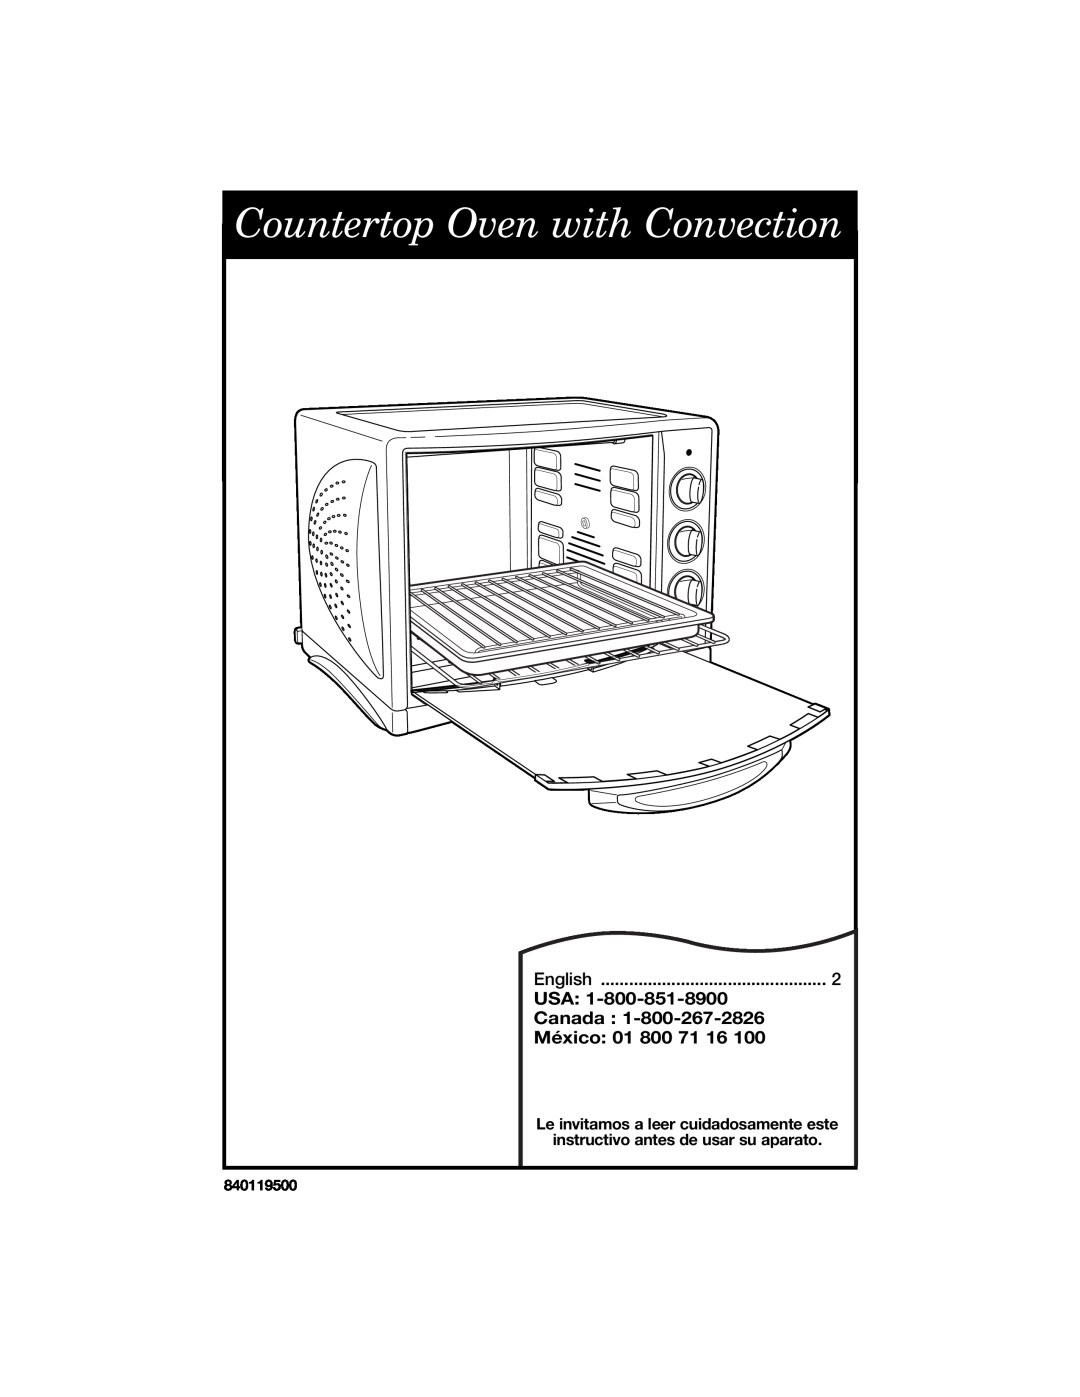 Hamilton Beach Countertop Oven with Convection manual Usa, Canada, México 01 800, English, 840119500 